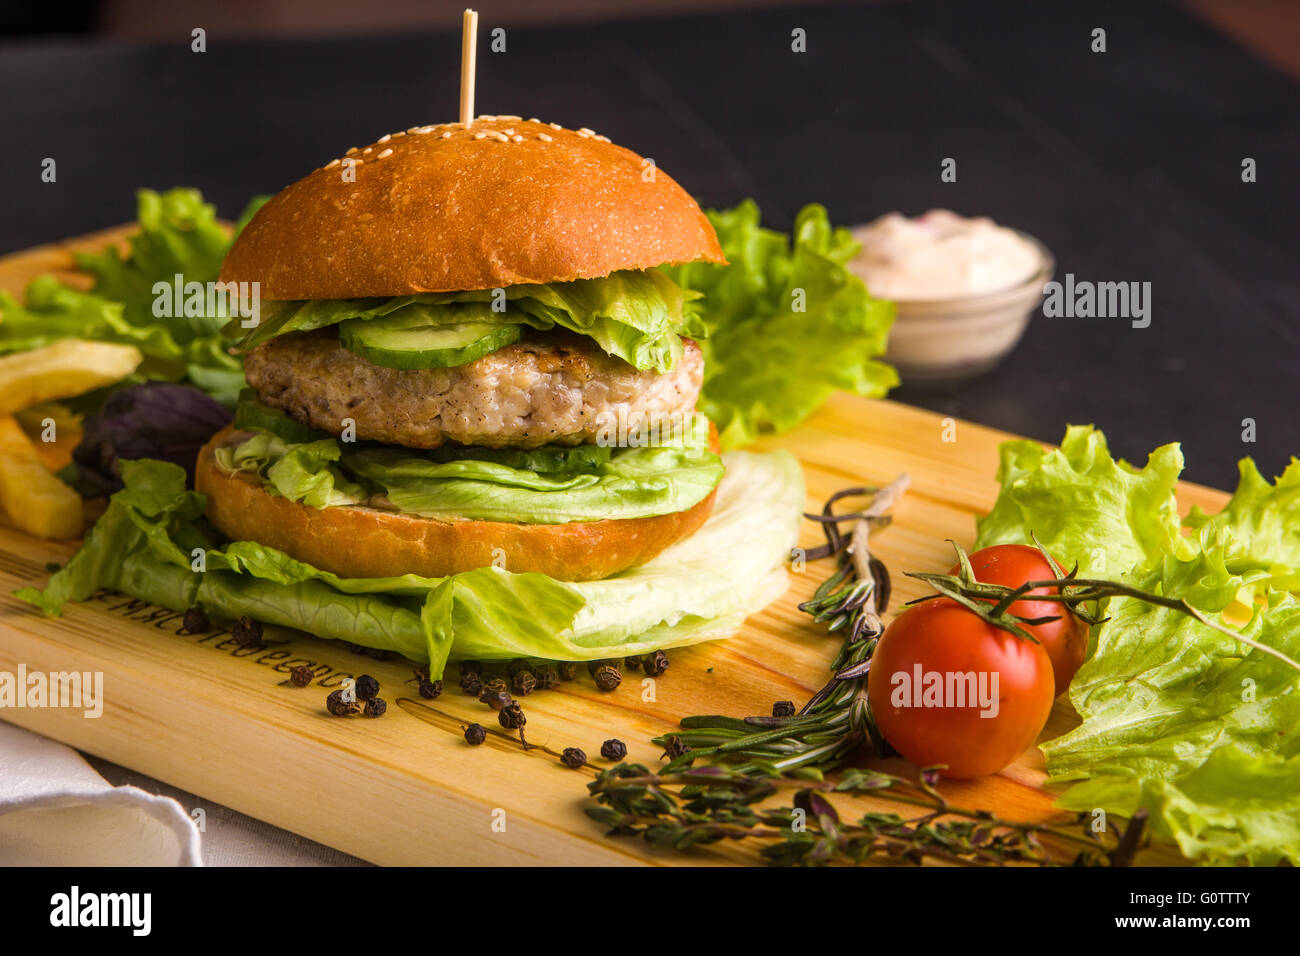 Maison gourmet burger avec garniture Banque D'Images